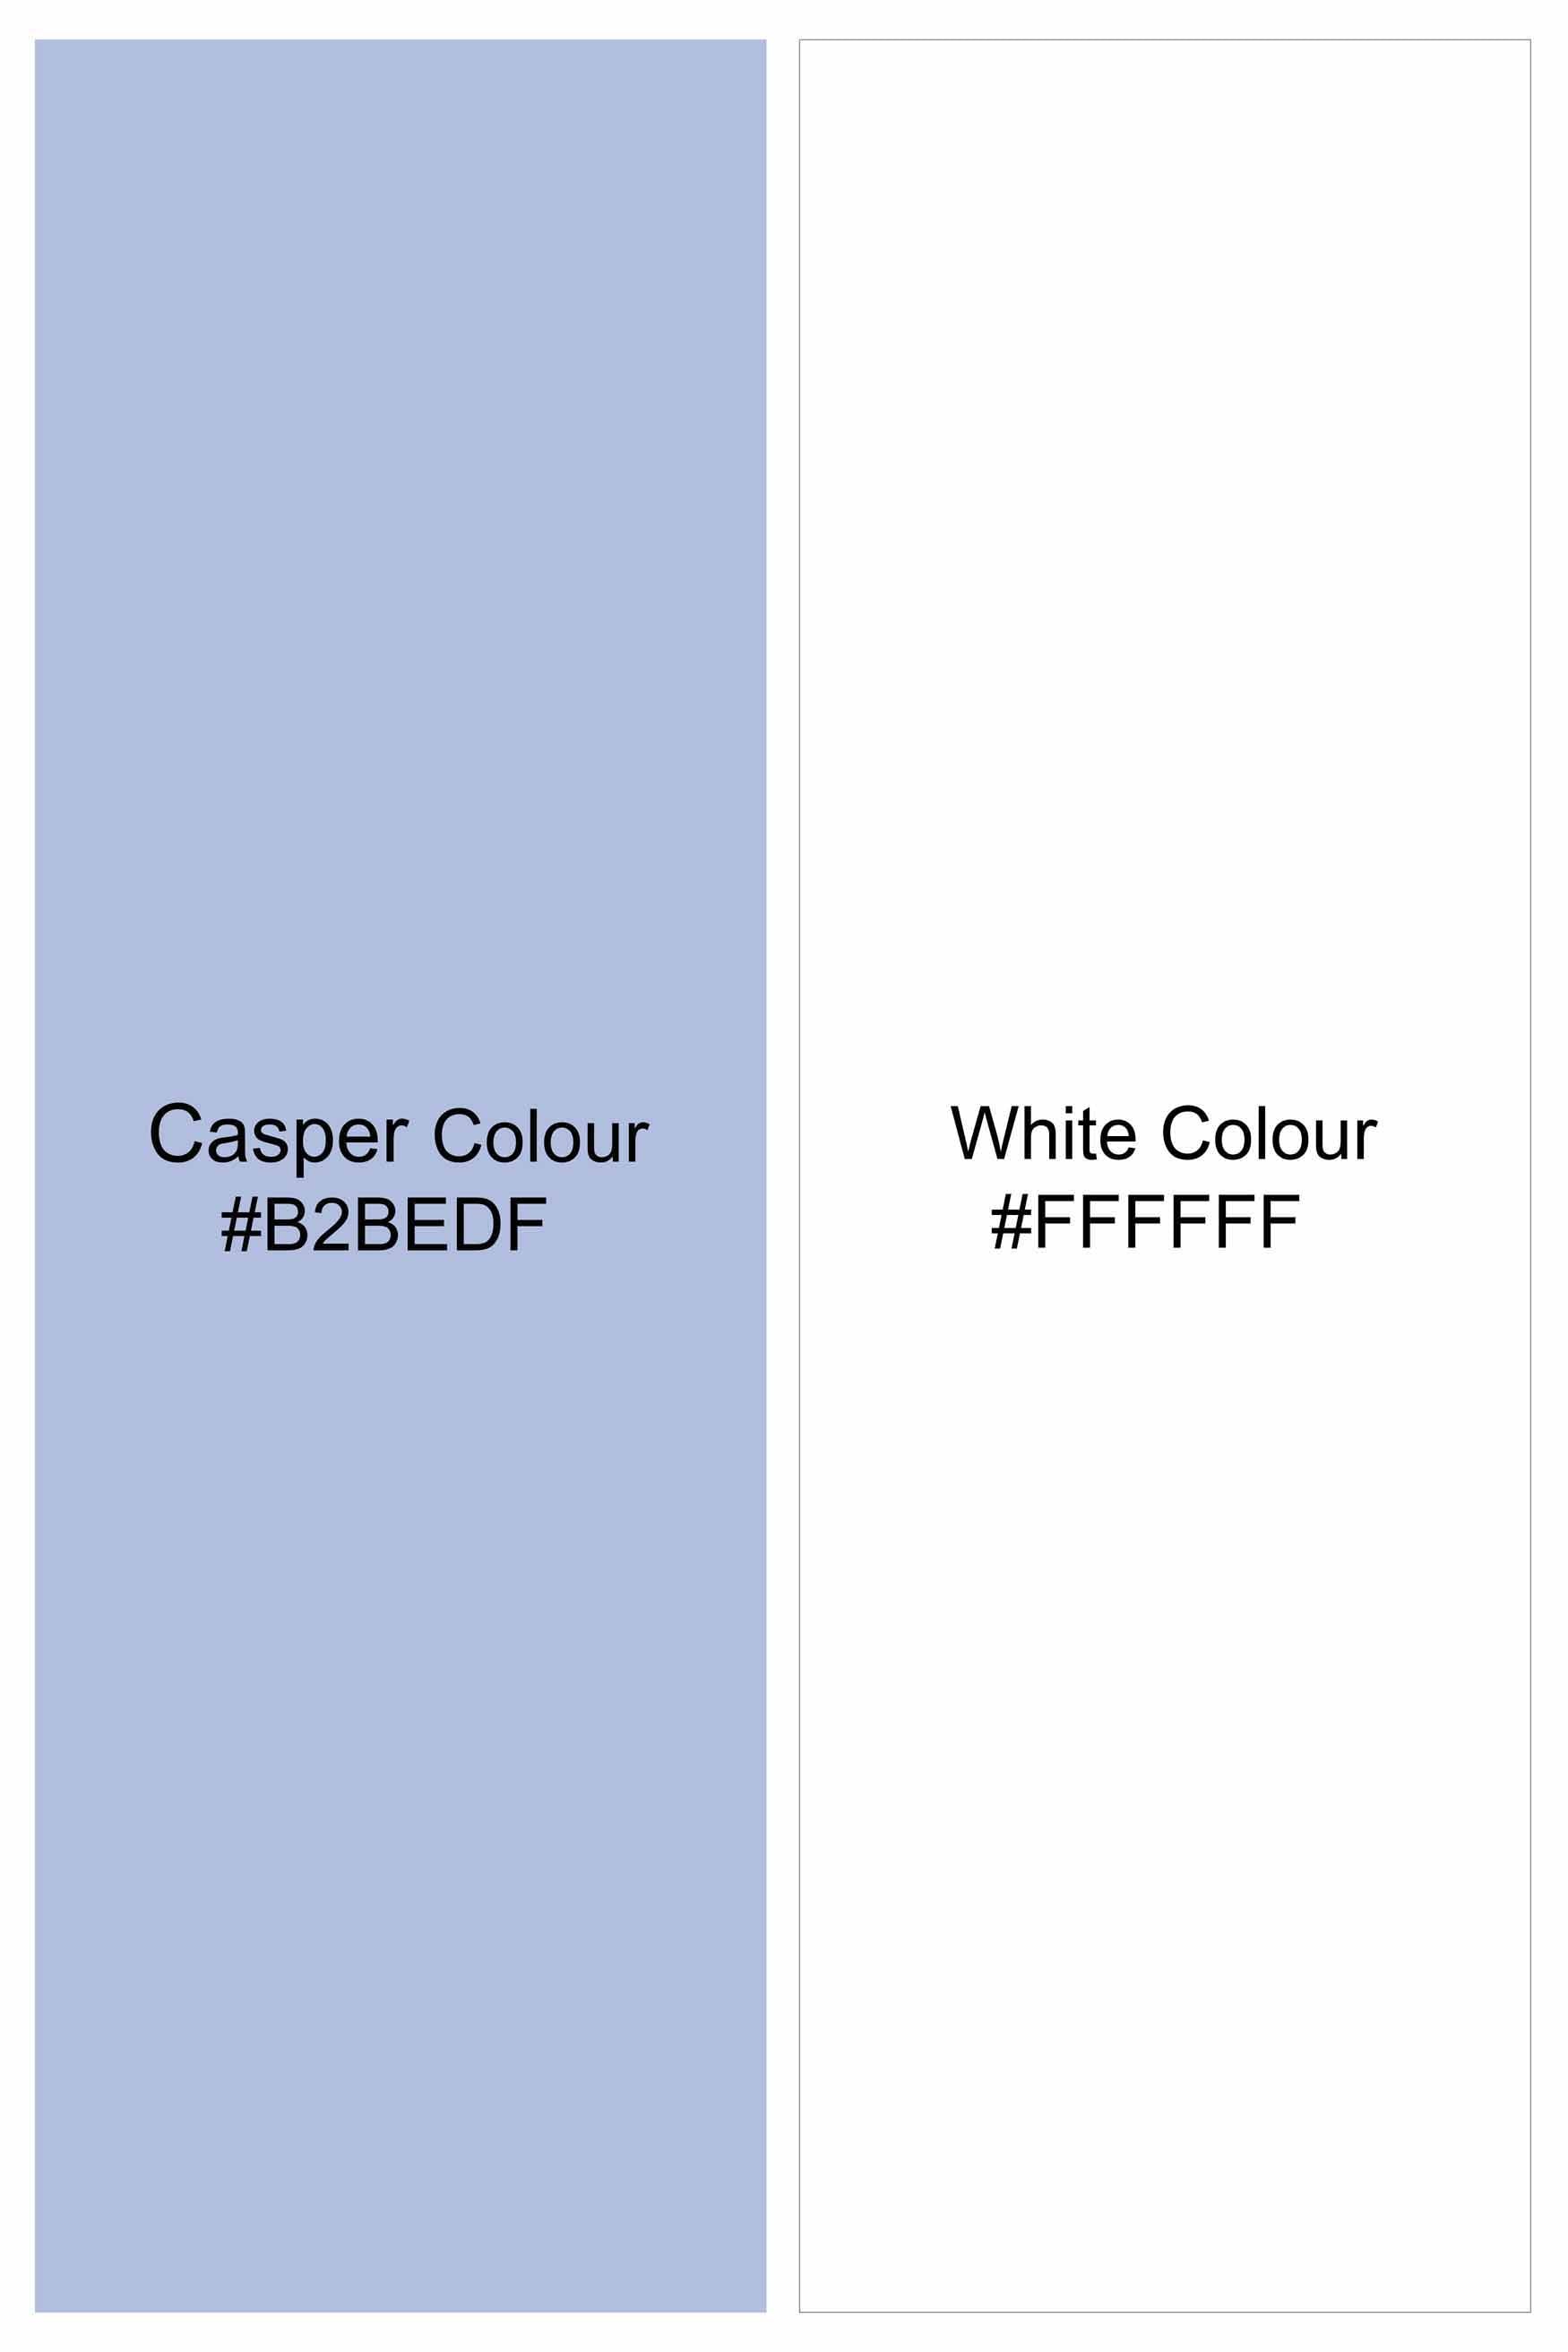 Casper Blue and White Striped Brand Name Patchwork Royal Oxford Designer Shirt 8713-WCC-E277-38, 8713-WCC-E277-H-38, 8713-WCC-E277-39, 8713-WCC-E277-H-39, 8713-WCC-E277-40, 8713-WCC-E277-H-40, 8713-WCC-E277-42, 8713-WCC-E277-H-42, 8713-WCC-E277-44, 8713-WCC-E277-H-44, 8713-WCC-E277-46, 8713-WCC-E277-H-46, 8713-WCC-E277-48, 8713-WCC-E277-H-48, 8713-WCC-E277-50, 8713-WCC-E277-H-50, 8713-WCC-E277-52, 8713-WCC-E277-H-52